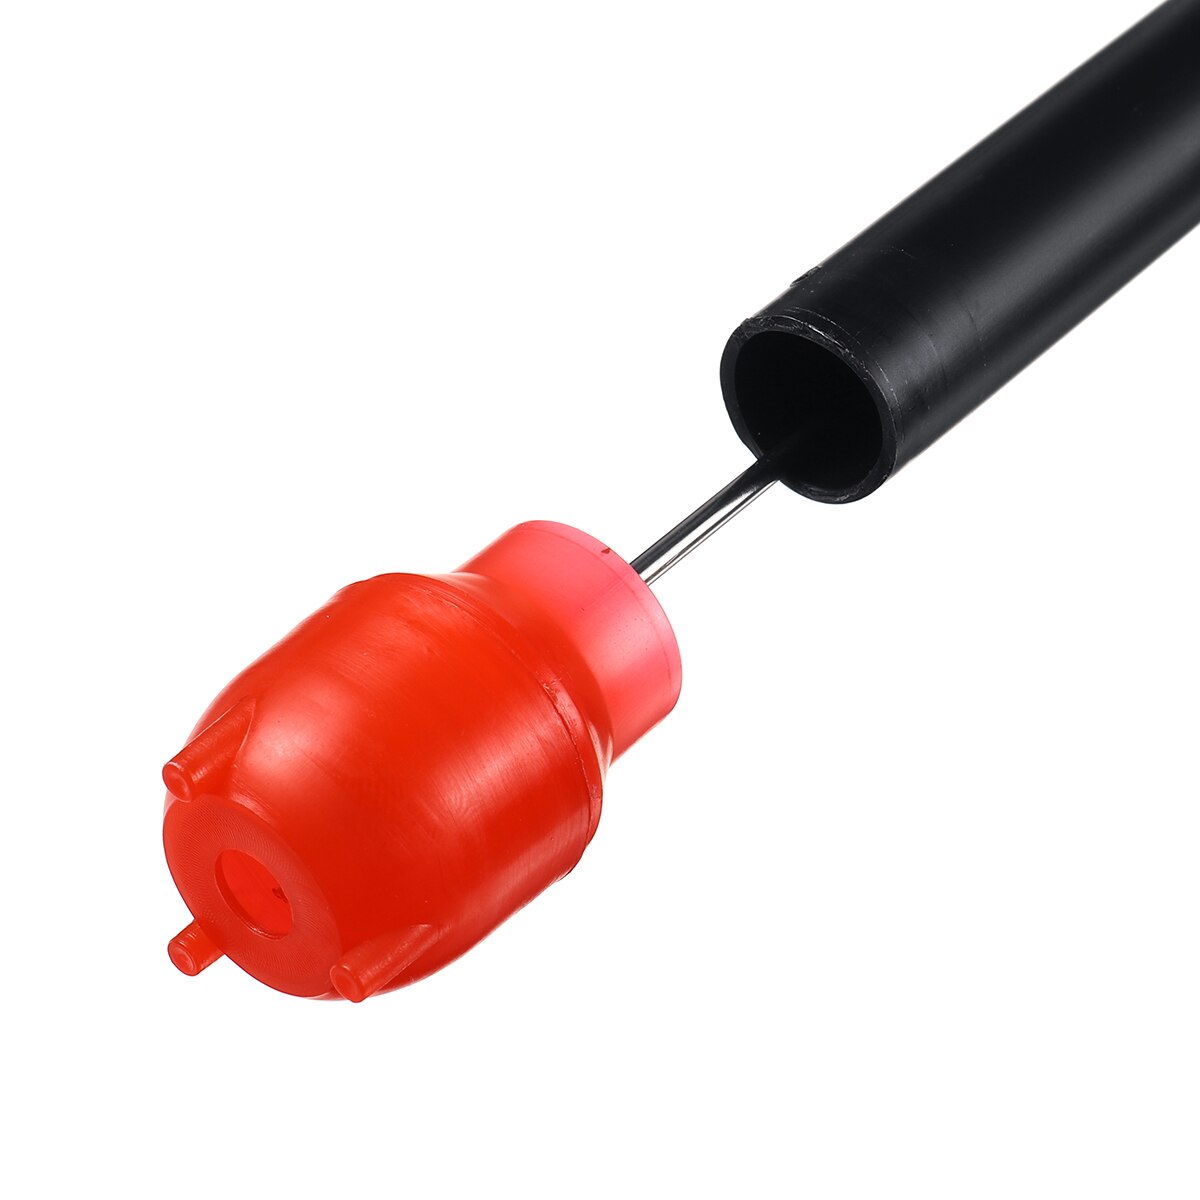 Drevet pumpe diesel brændstof opløsningsmiddel bærbart elektrisk batteri sifon flydende vand gasolie pumpe kraftoverførselsværktøj pumper rød